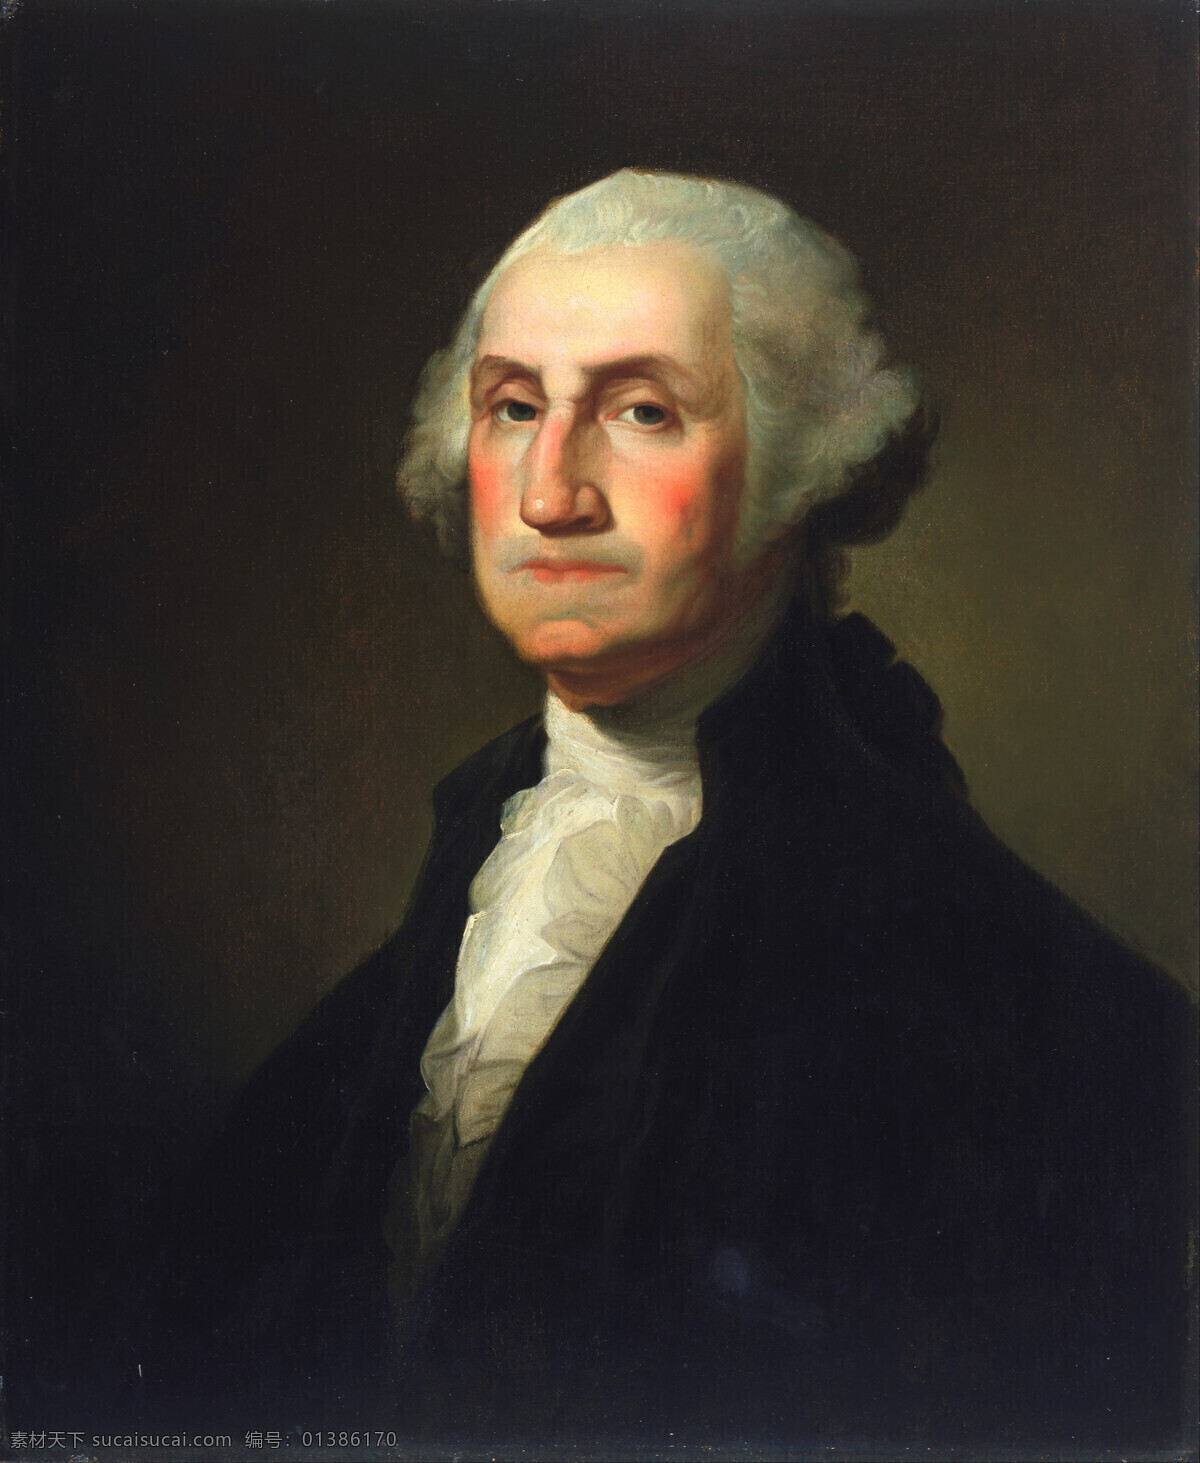 乔治 华盛顿 美利坚合众国 任总 统 世界 上 一个 资本主义 民主 国家 矿工之子 18世纪油画 油画 绘画书法 文化艺术